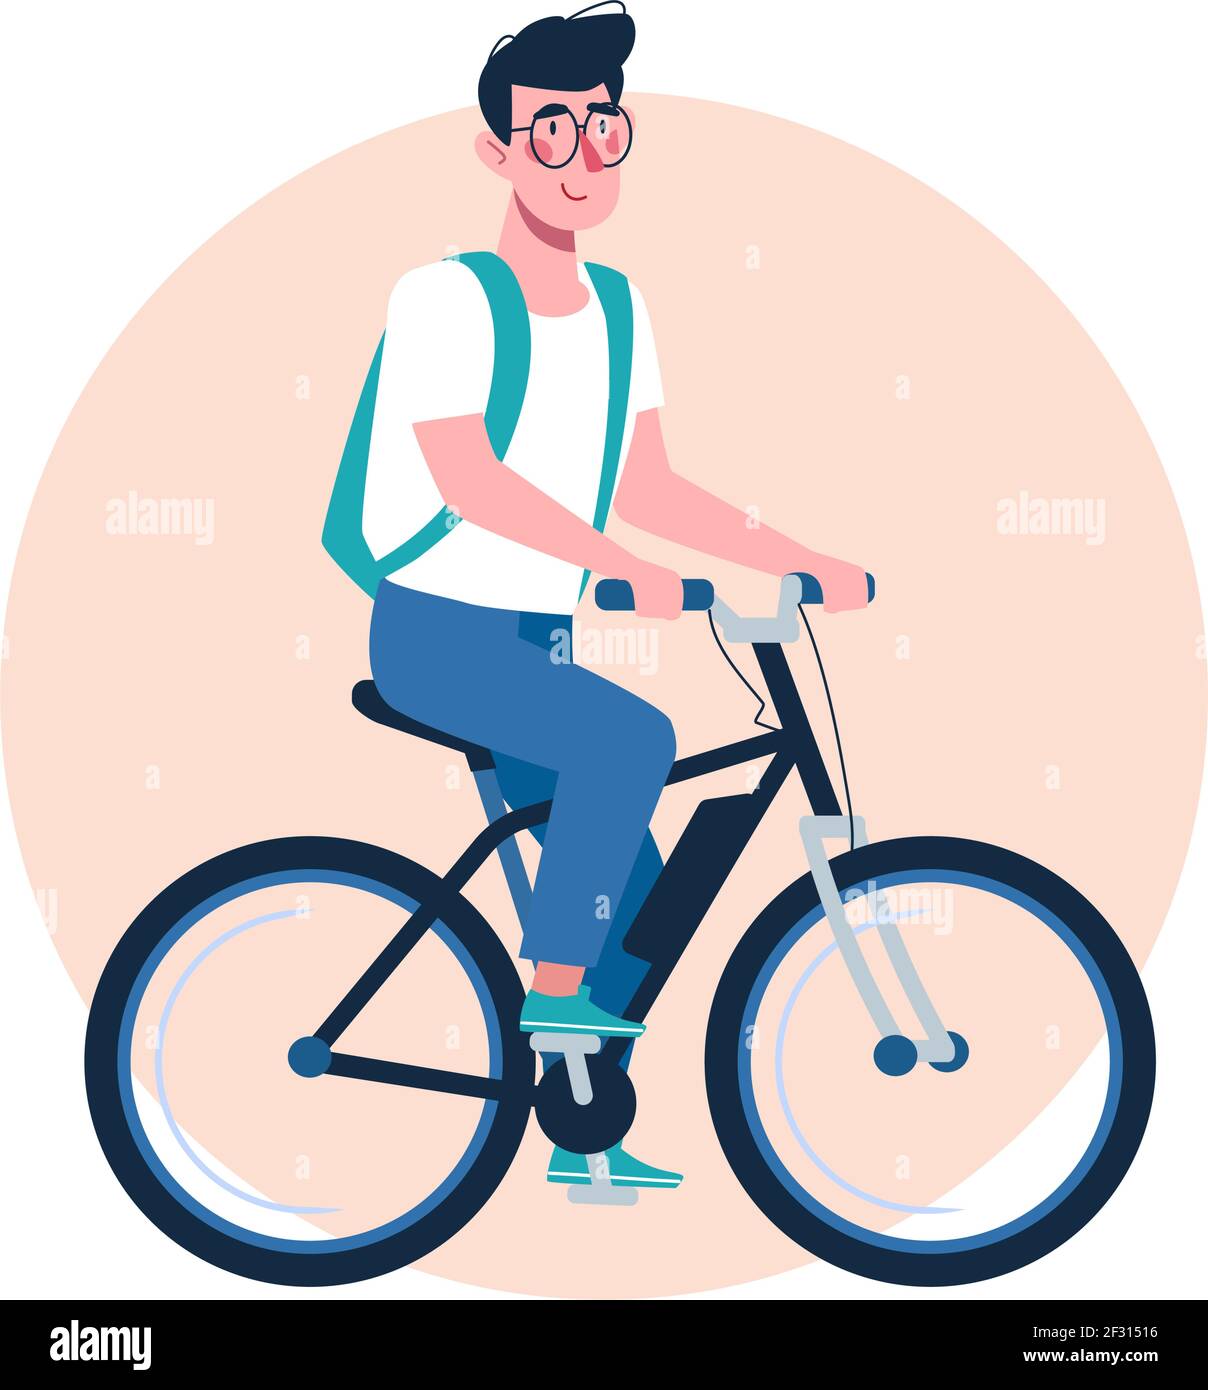 El niño está montando en bicicleta. El niño con gafas va a la